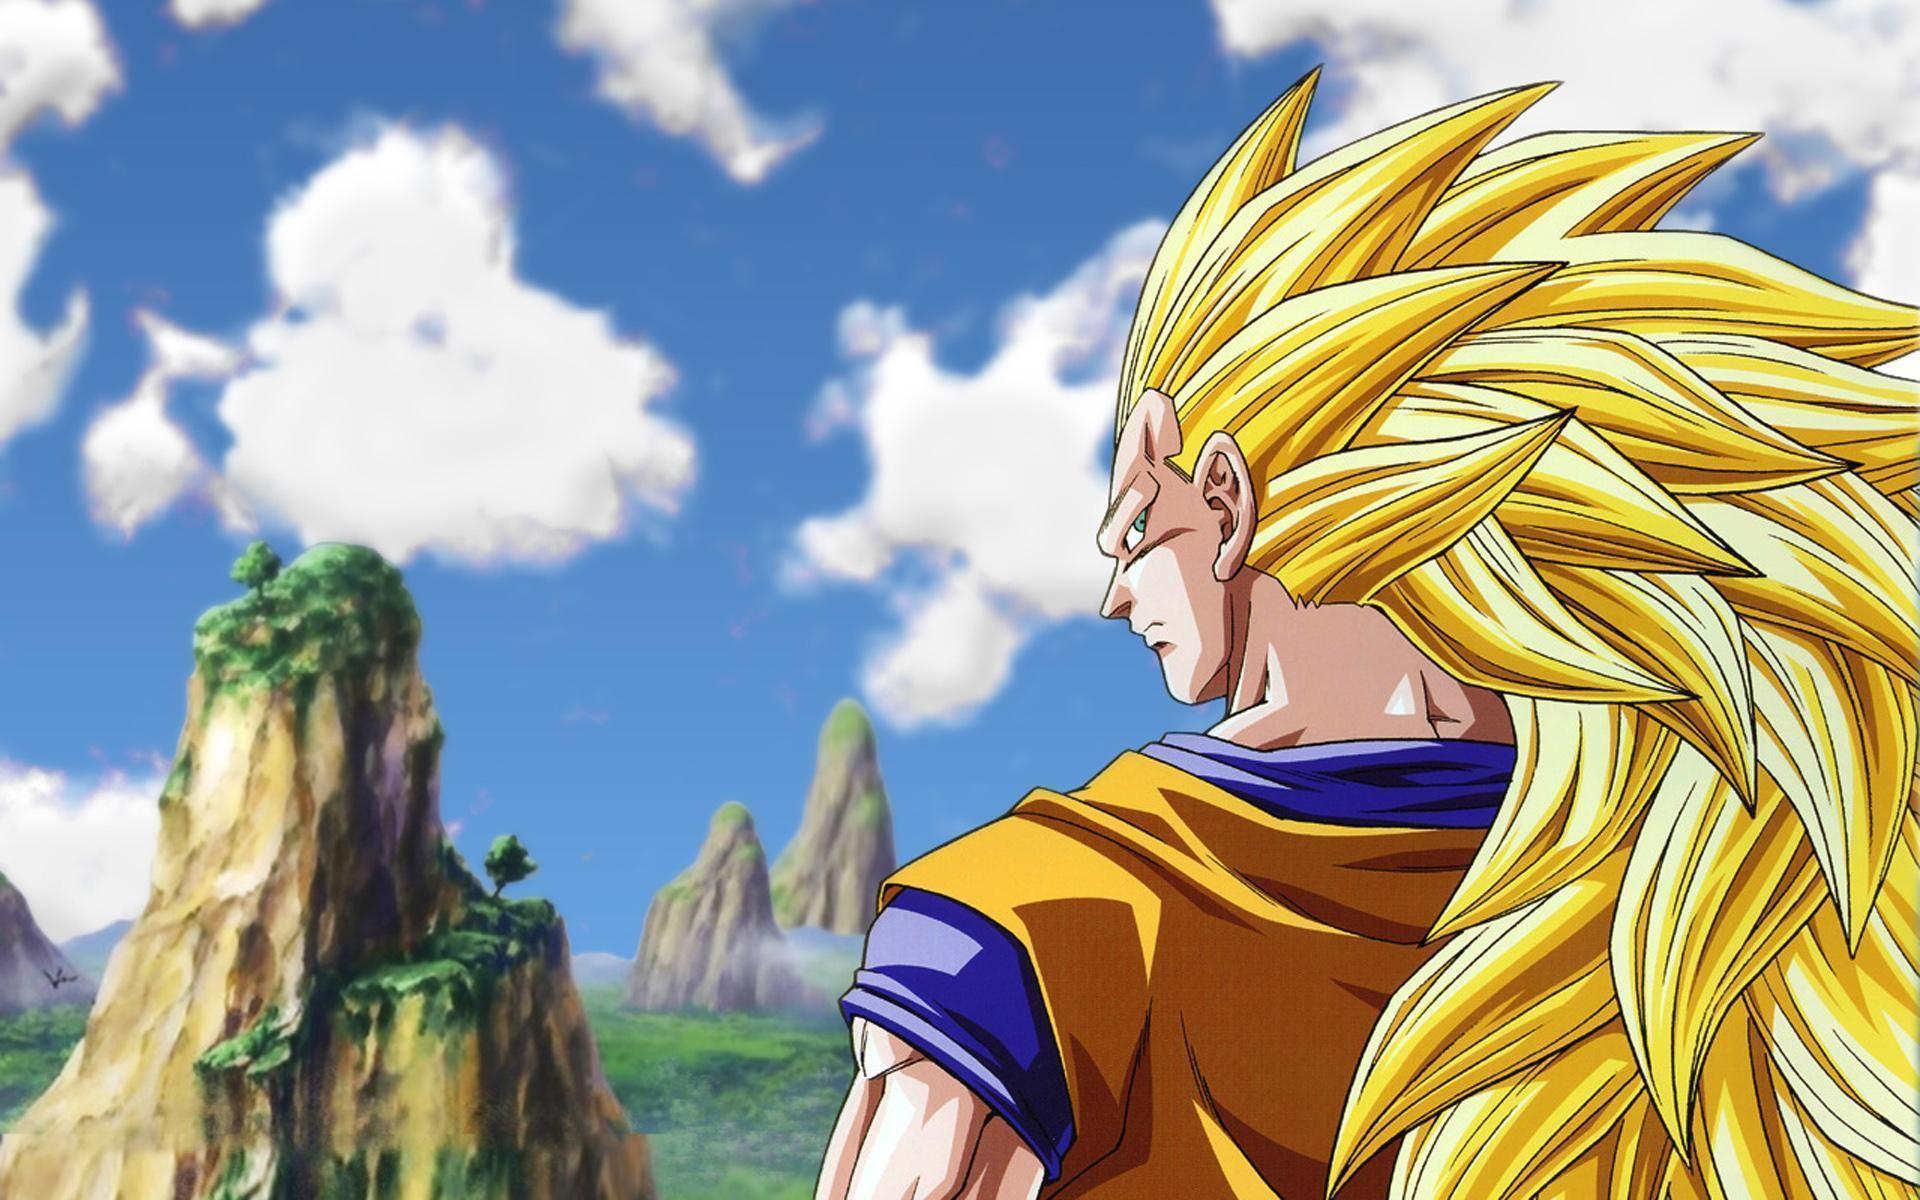 Dragon Ball Z Son Goku HD Wallpaper Download. DBZ